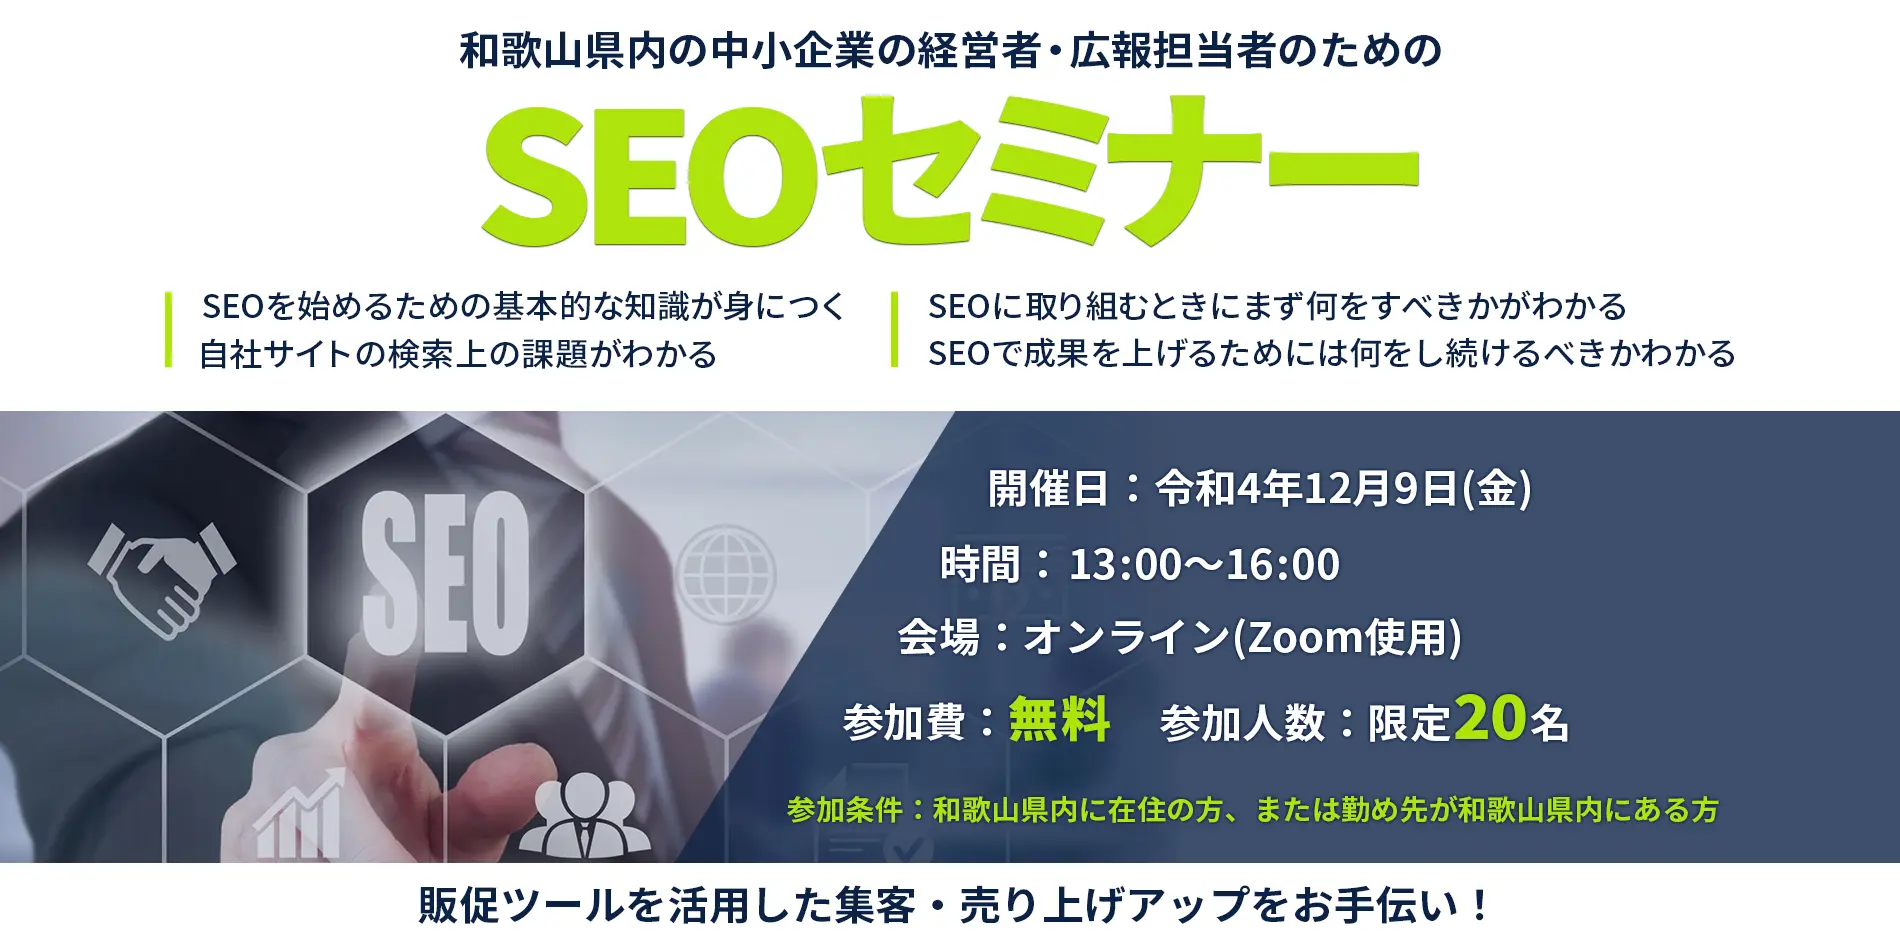 和歌山県内の中小企業の経営者、広報担当者のための、SEOセミナー